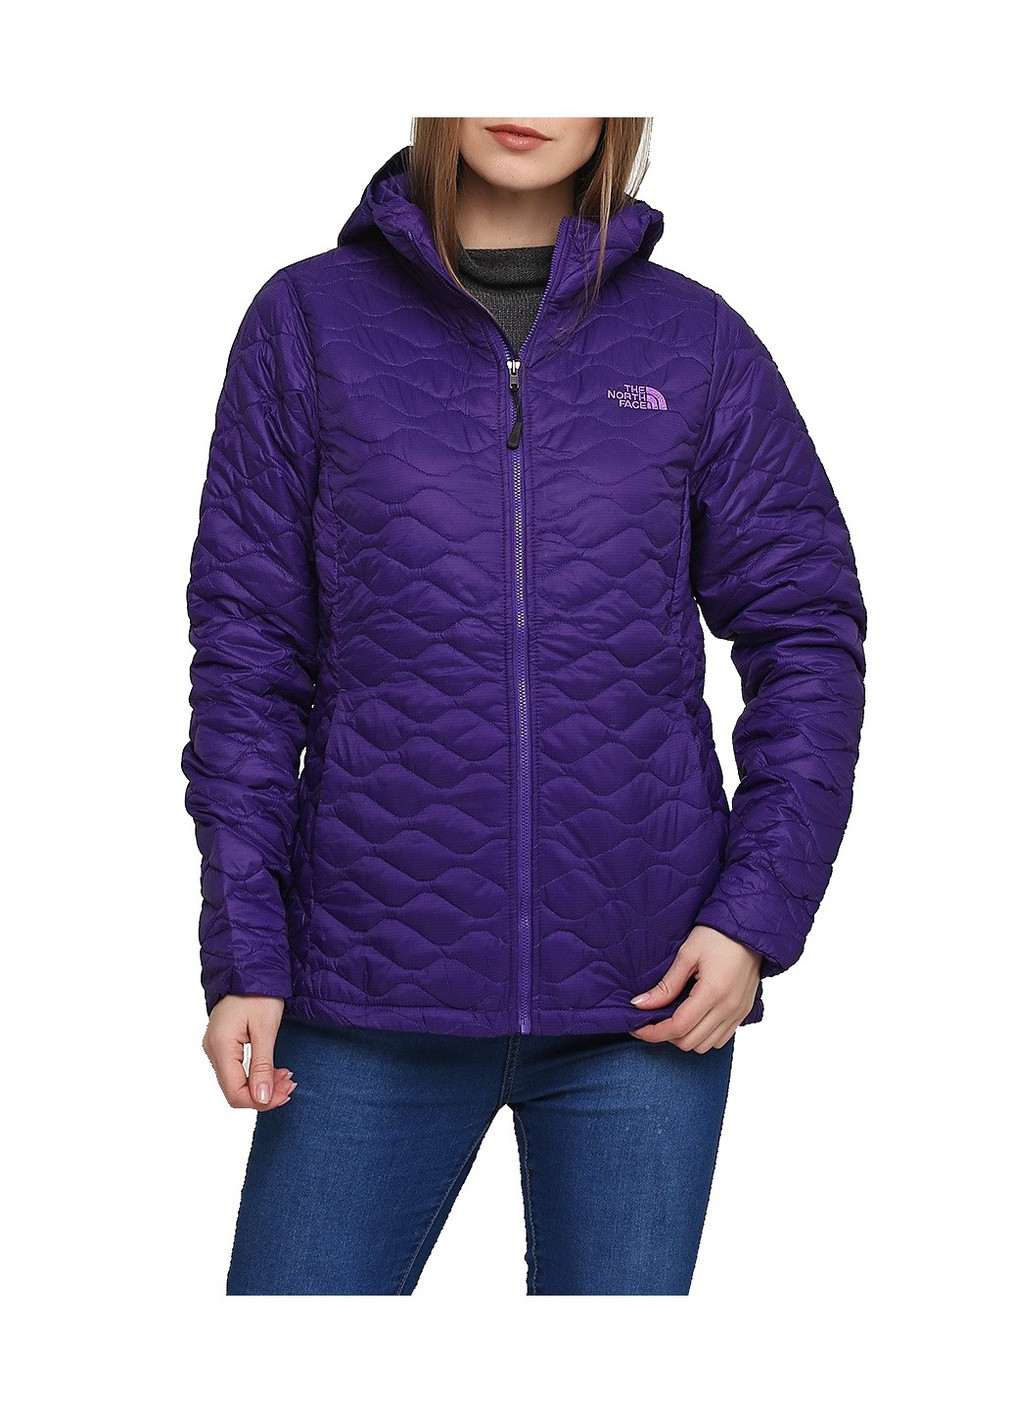 Фиолетовая демисезонная куртка женская The North Face